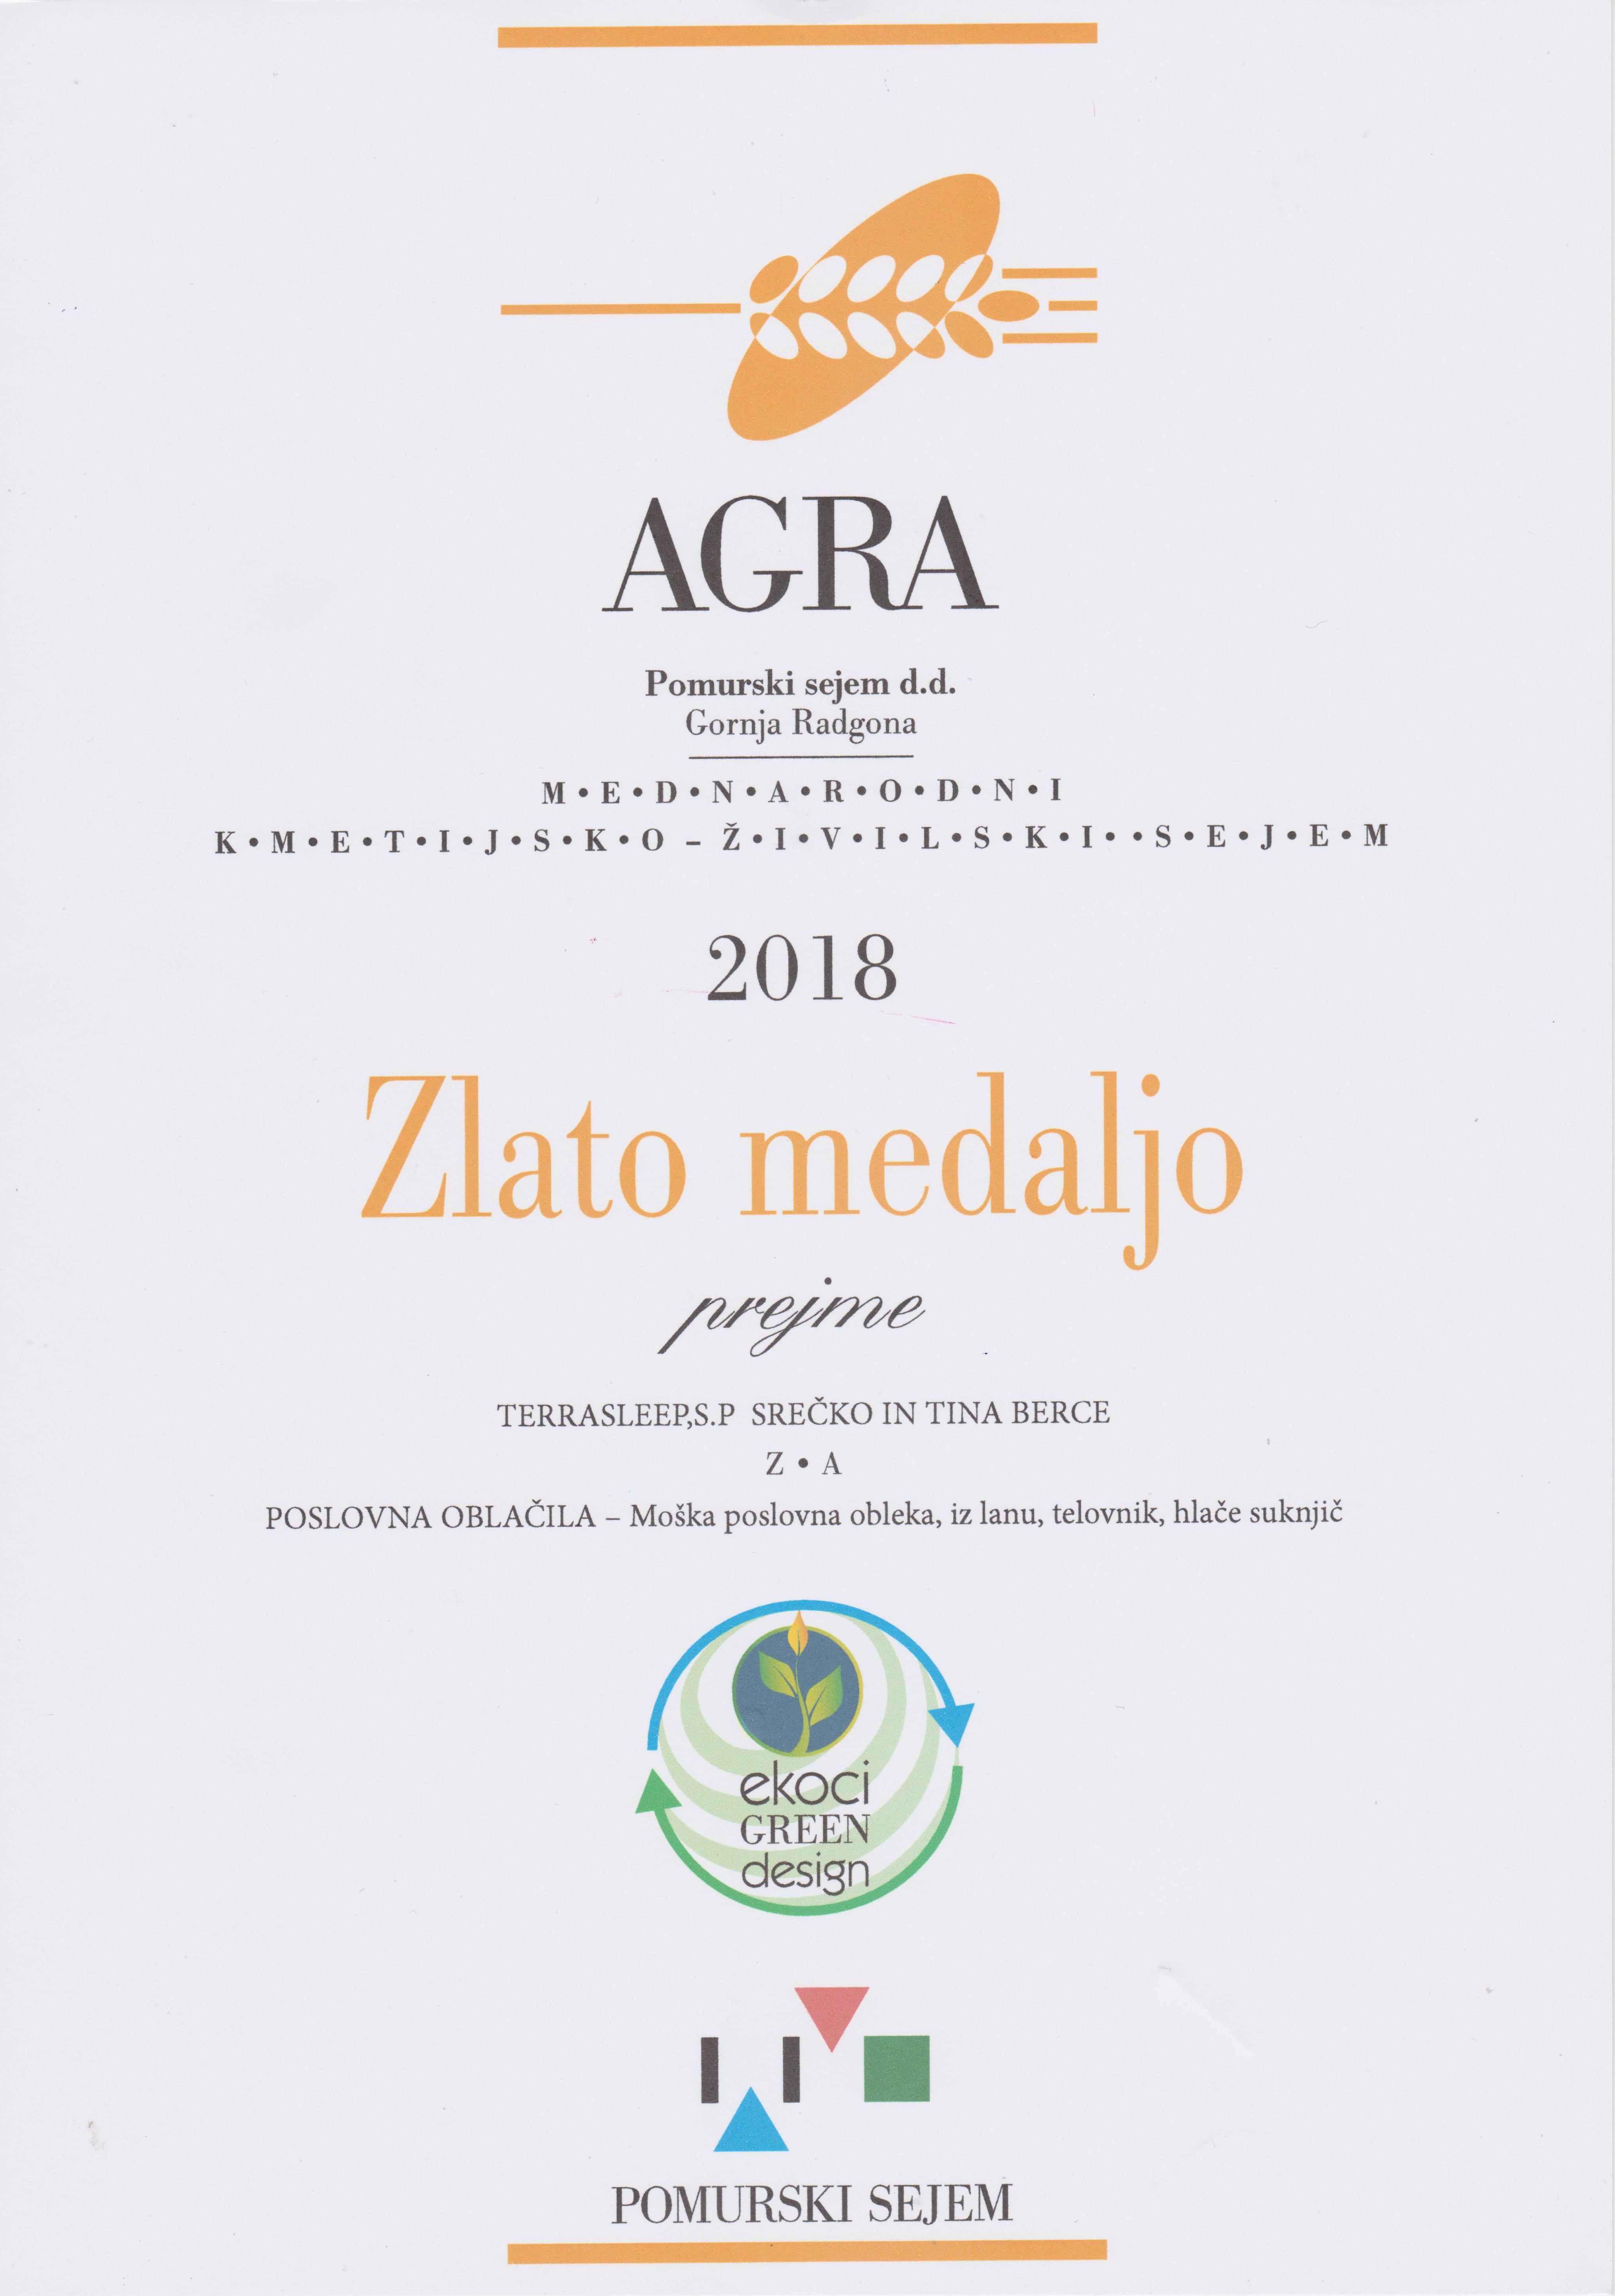 Zlata medalja AGRA 2018 - poslovna oblačila